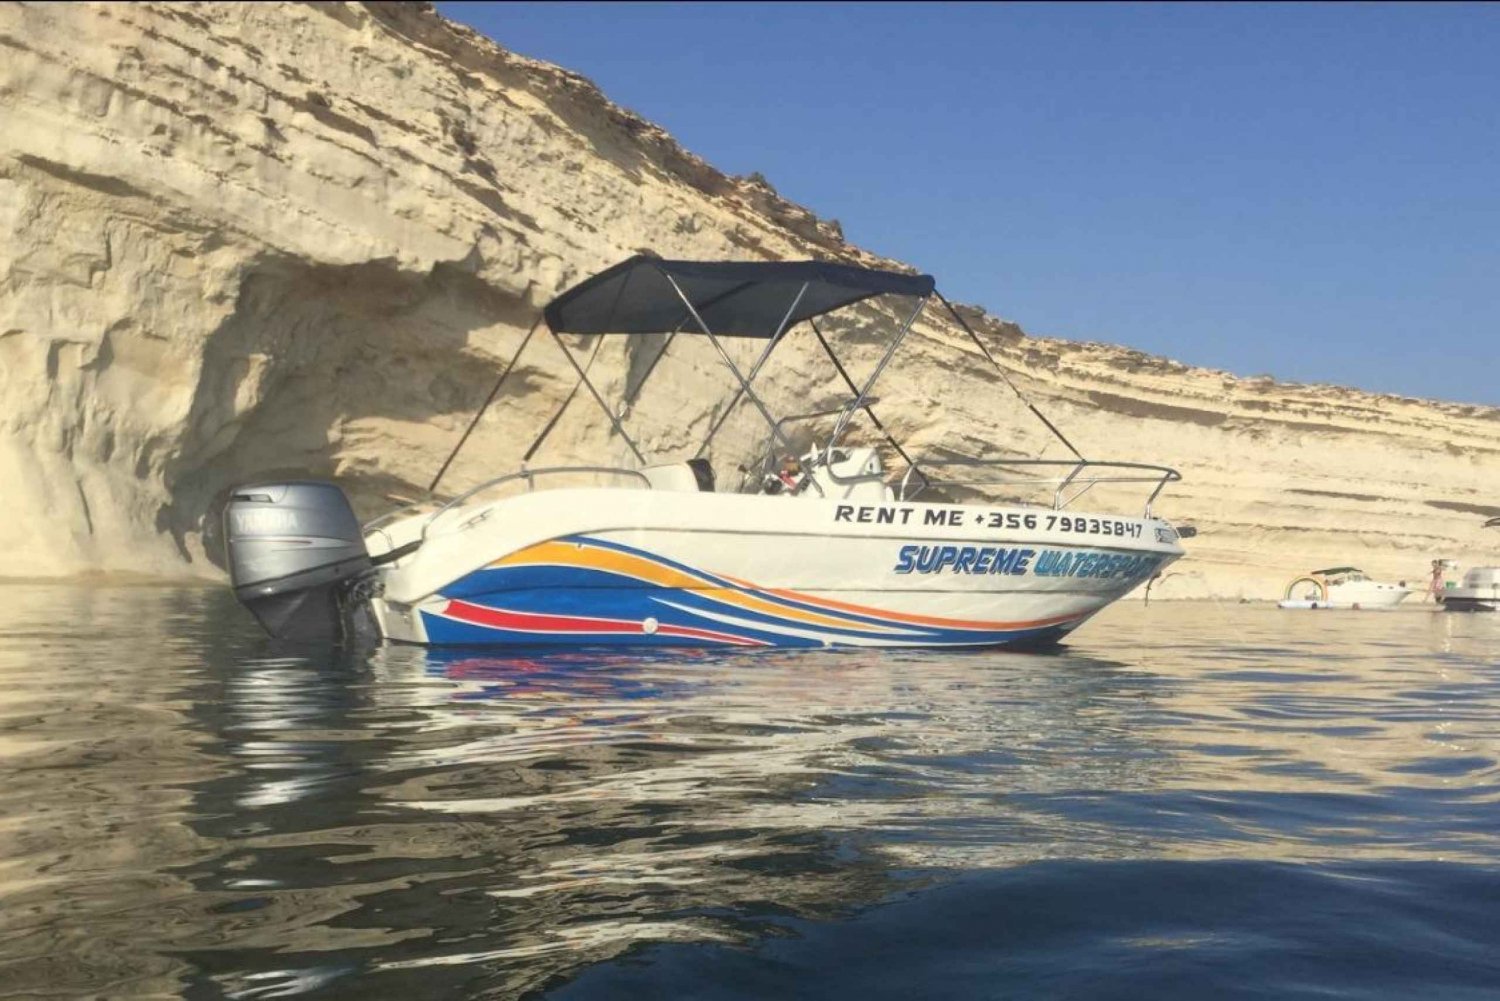 Sliema: Barco particular com condução autônoma por 3,5 horas